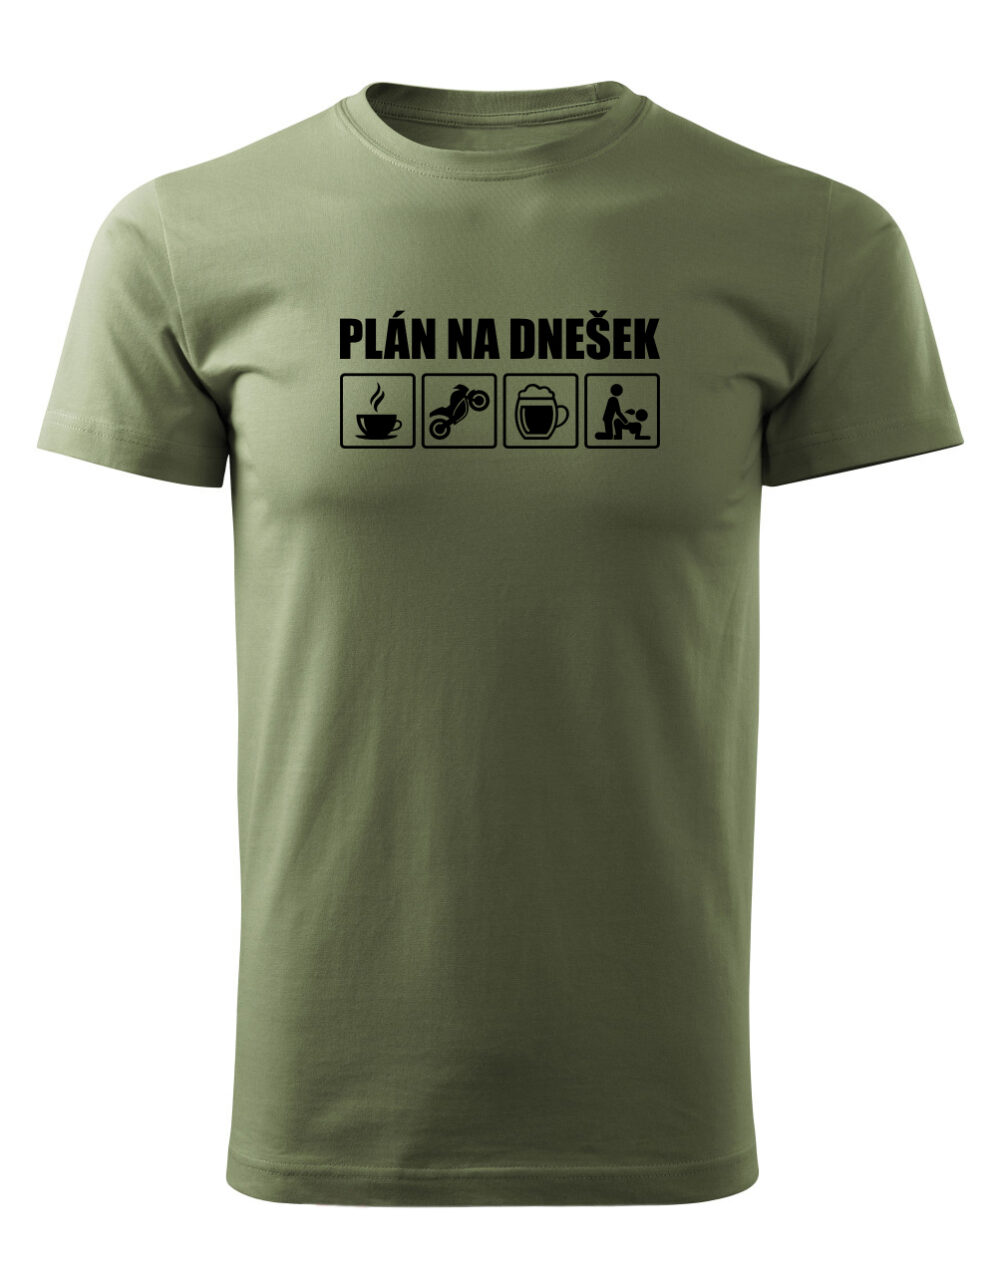 Pánské tričko s potiskem Plán na dnešek vlašský ořech